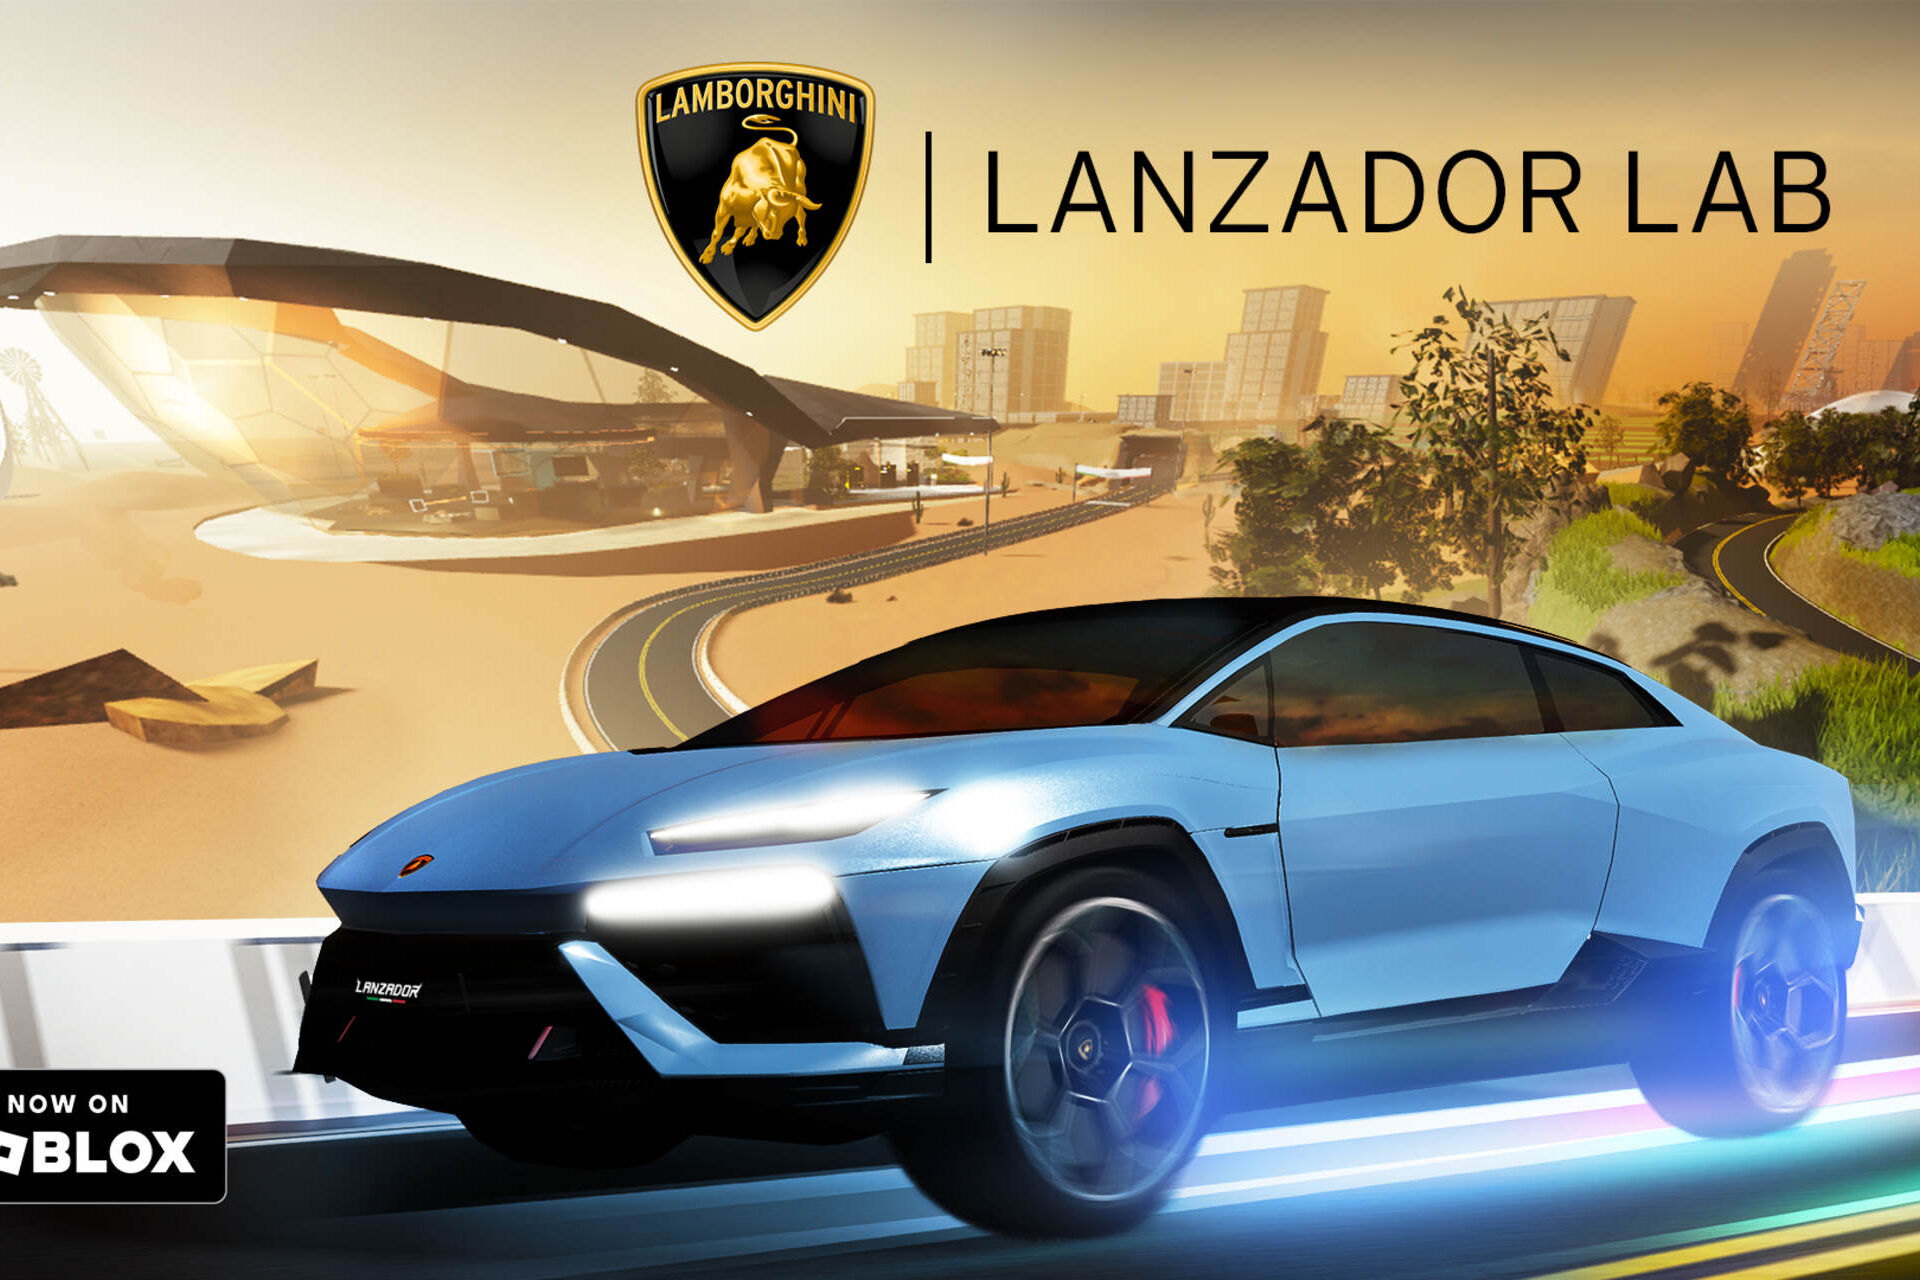 Lanzador: електричний суперкар Automobili Lamborghini на Roblox, тривимірній платформі занурення